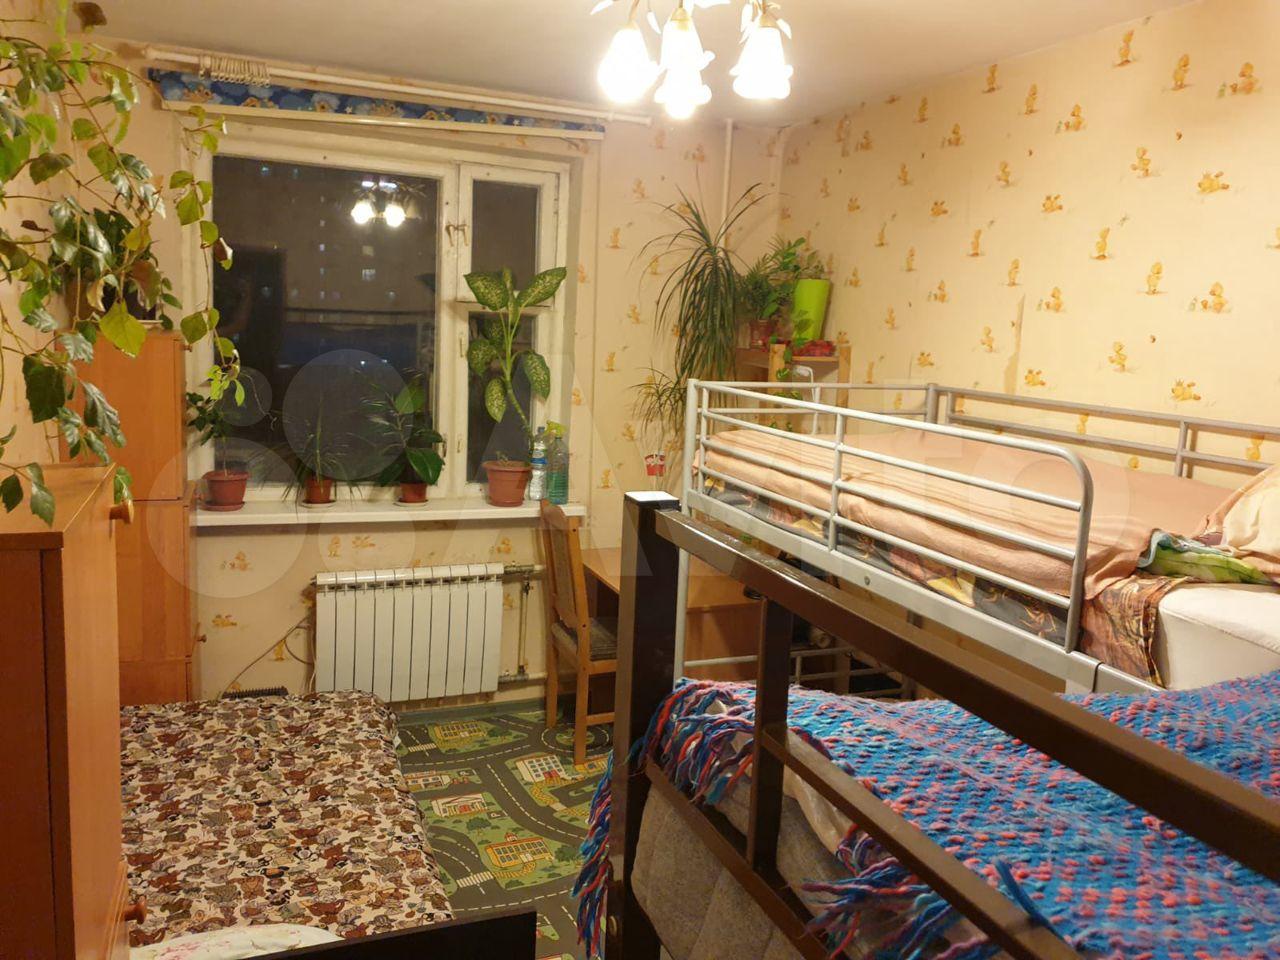 Комната без посредников м. Комфортная комната. Койка место в Москве недорого без посредников от хозяина в комнате.